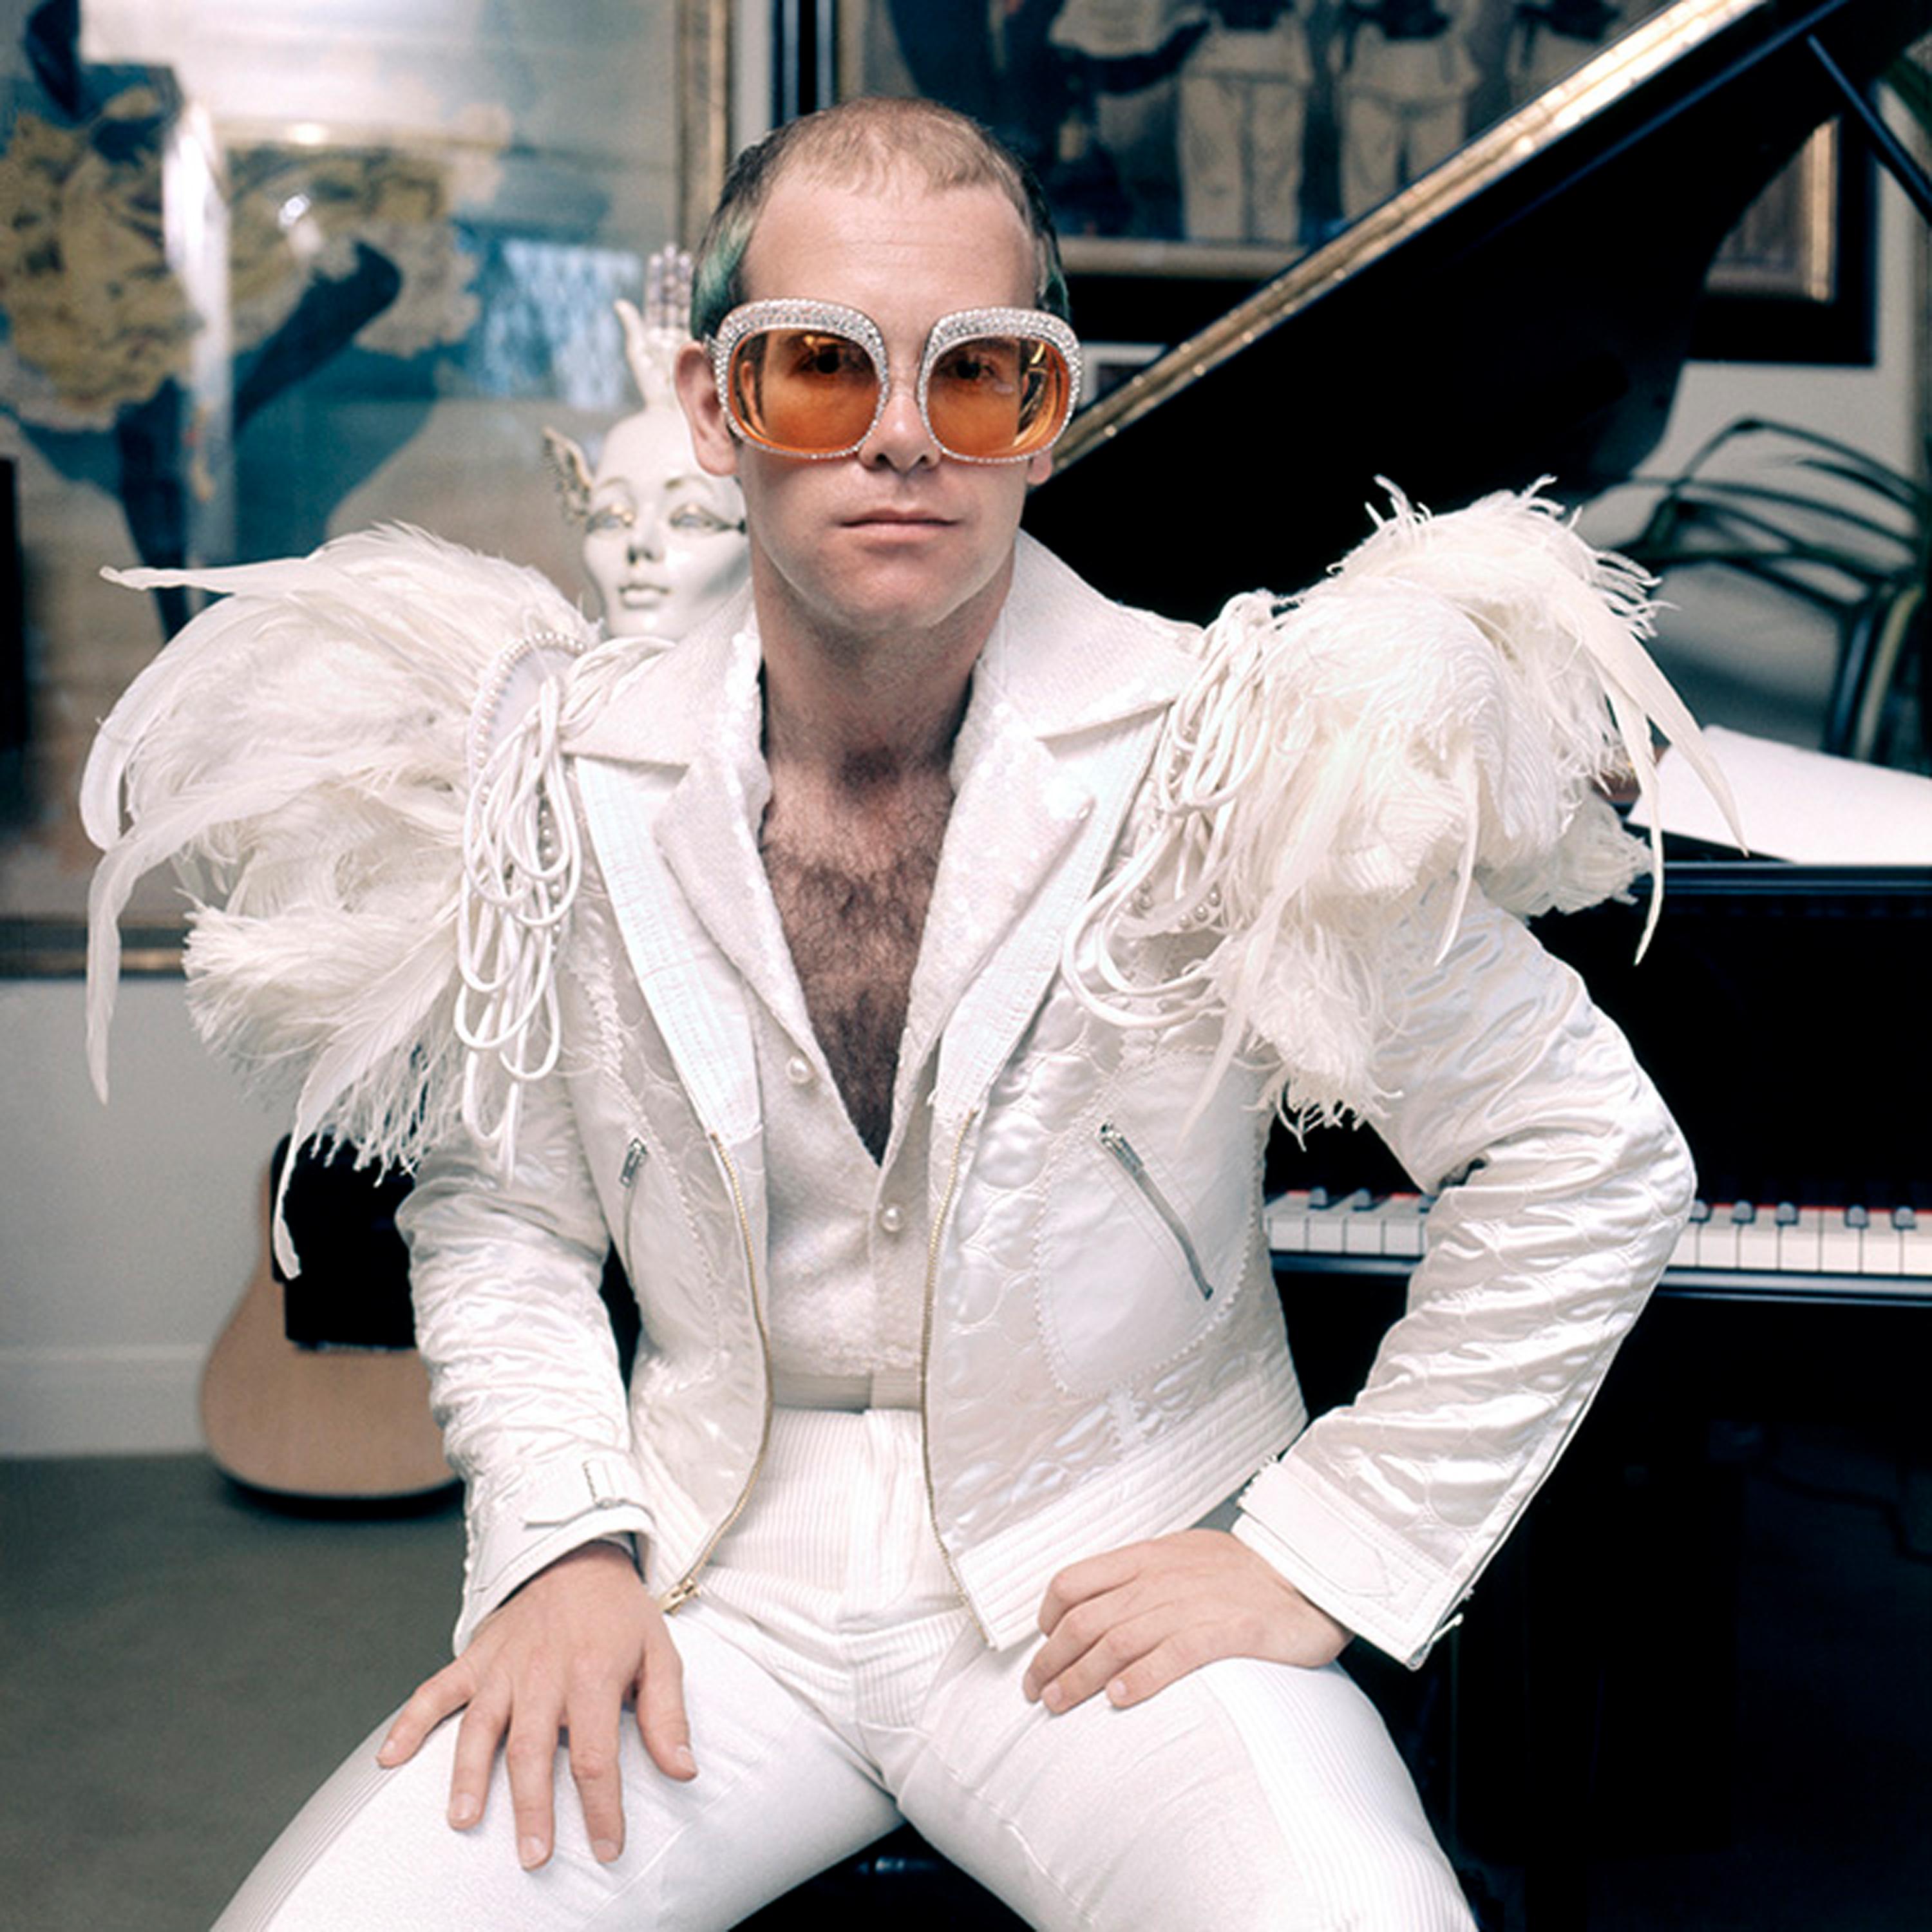 Elton John, circa 1973 - Photograph by Terry O'Neill